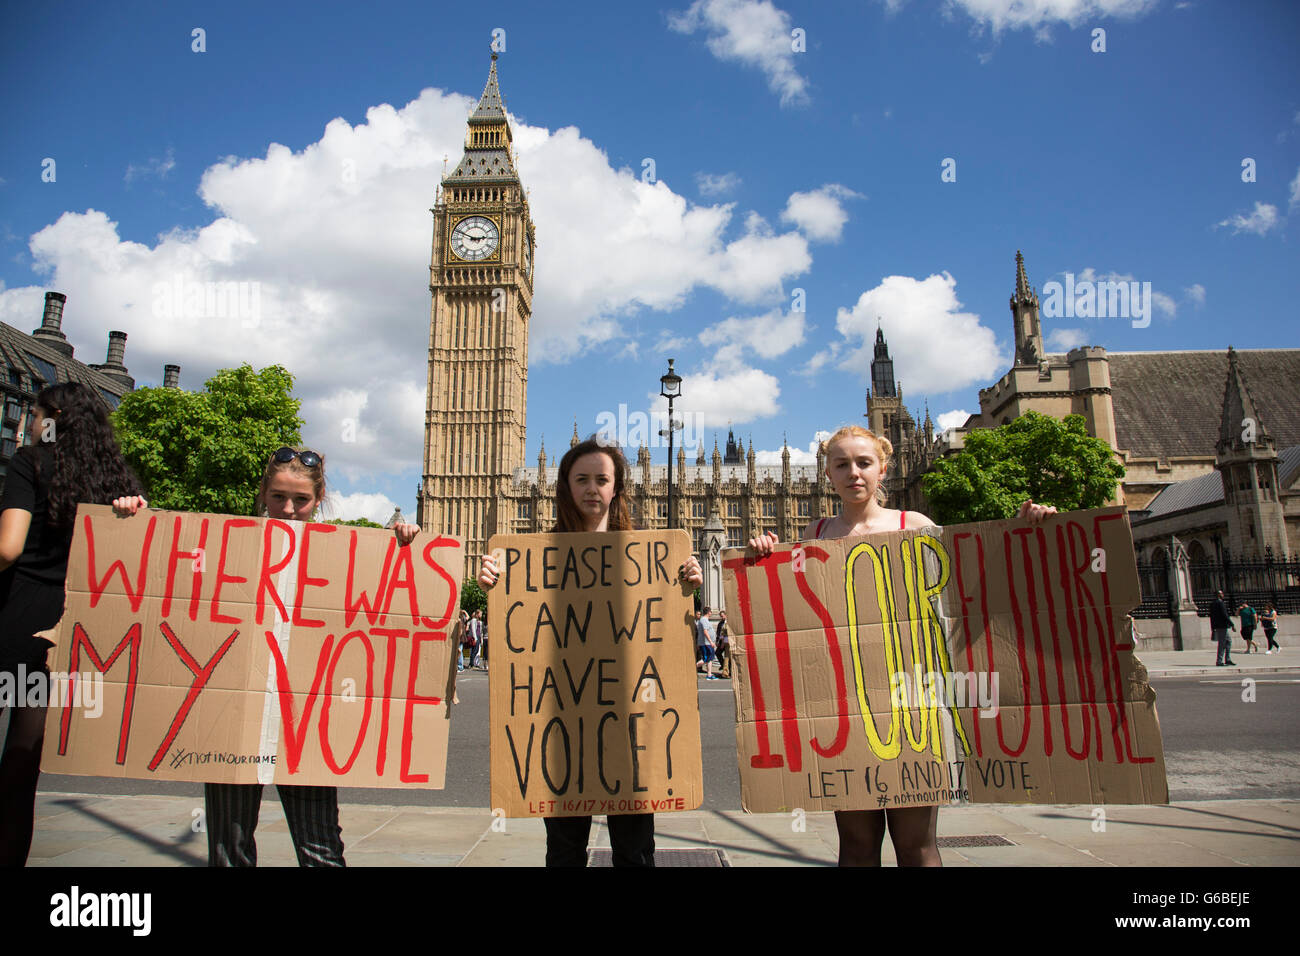 Londres, Reino Unido. 24 de junio de 2016. Grupo de jóvenes manifestantes se reúnen para protestar que a los 16 años de edad que eran demasiado jóvenes para votar, en Westminster, fuera de las casas de Parliamant tras dejar un voto, también conocido como Brexit como EU Referendum en el Reino Unido votos para salir de la Unión Europea de 24 de junio de 2016 en Londres, Reino Unido. La pertenencia a la Unión Europea ha sido un tema de debate en el Reino Unido desde que el país se unió a la CEE, o mercado común en 1973. Crédito: Michael Kemp/Alamy Live News Foto de stock